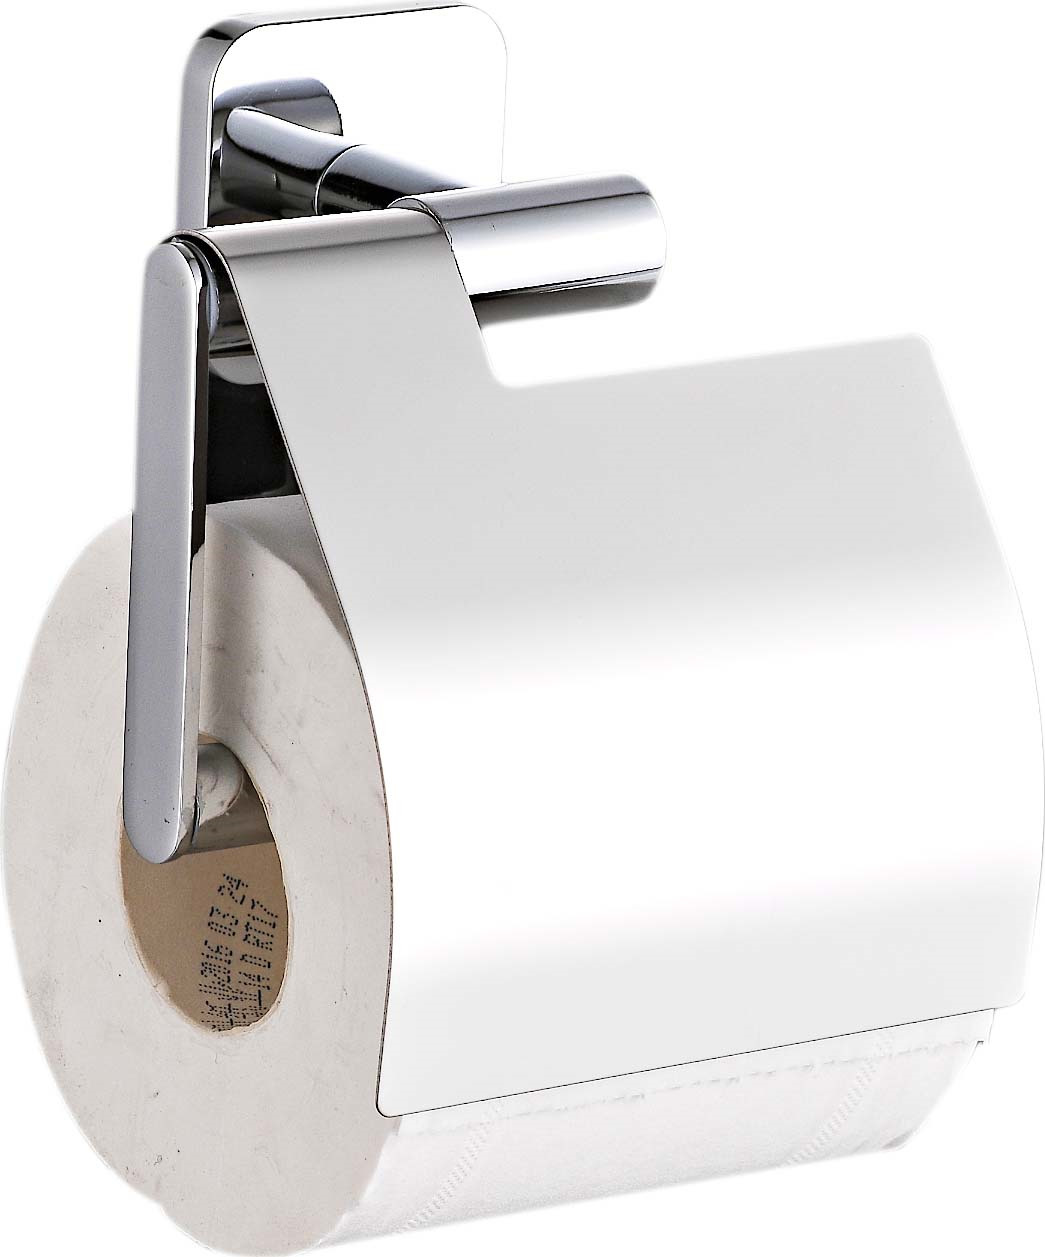 фото Диспенсер для туалетной бумаги РМС, A1130, хром Ростовская мануфактура сантехники